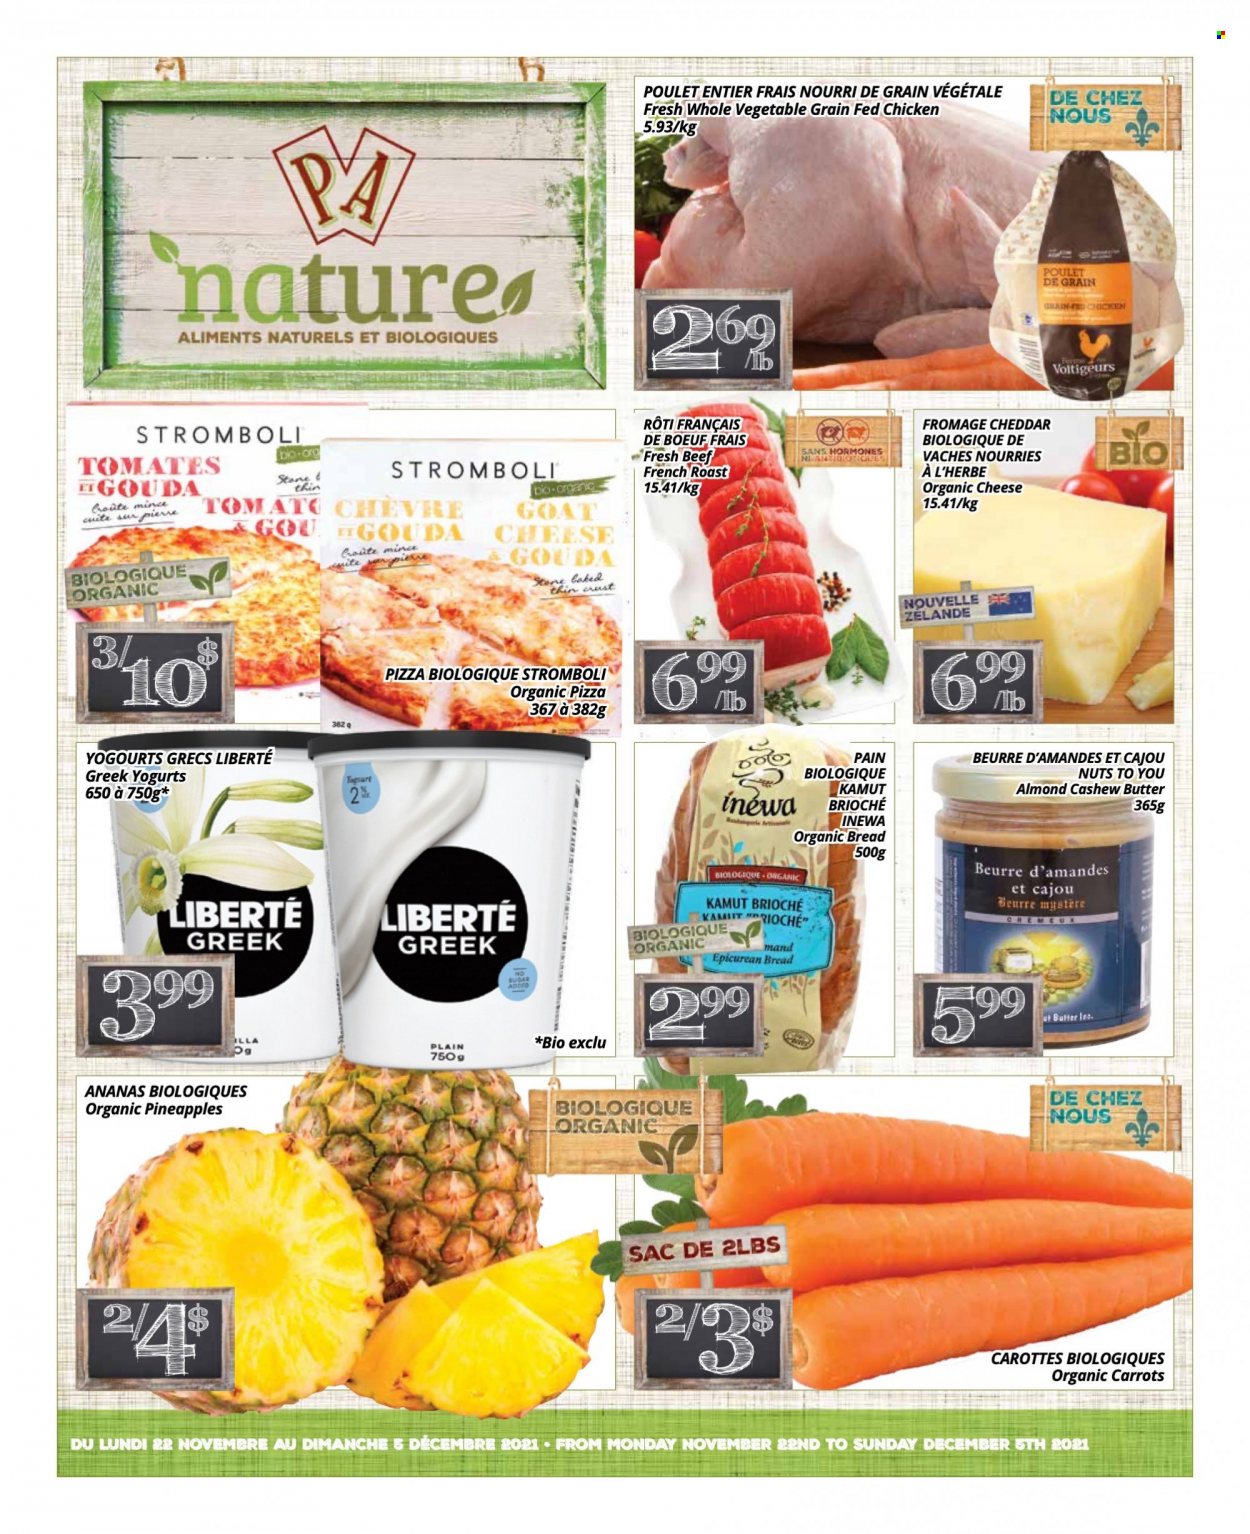 thumbnail - Circulaire PA Nature - 22 Novembre 2021 - 05 Décembre 2021 - Produits soldés - brioche, pain, carotte, ananas, poulet, pizza, beurre. Page 1.